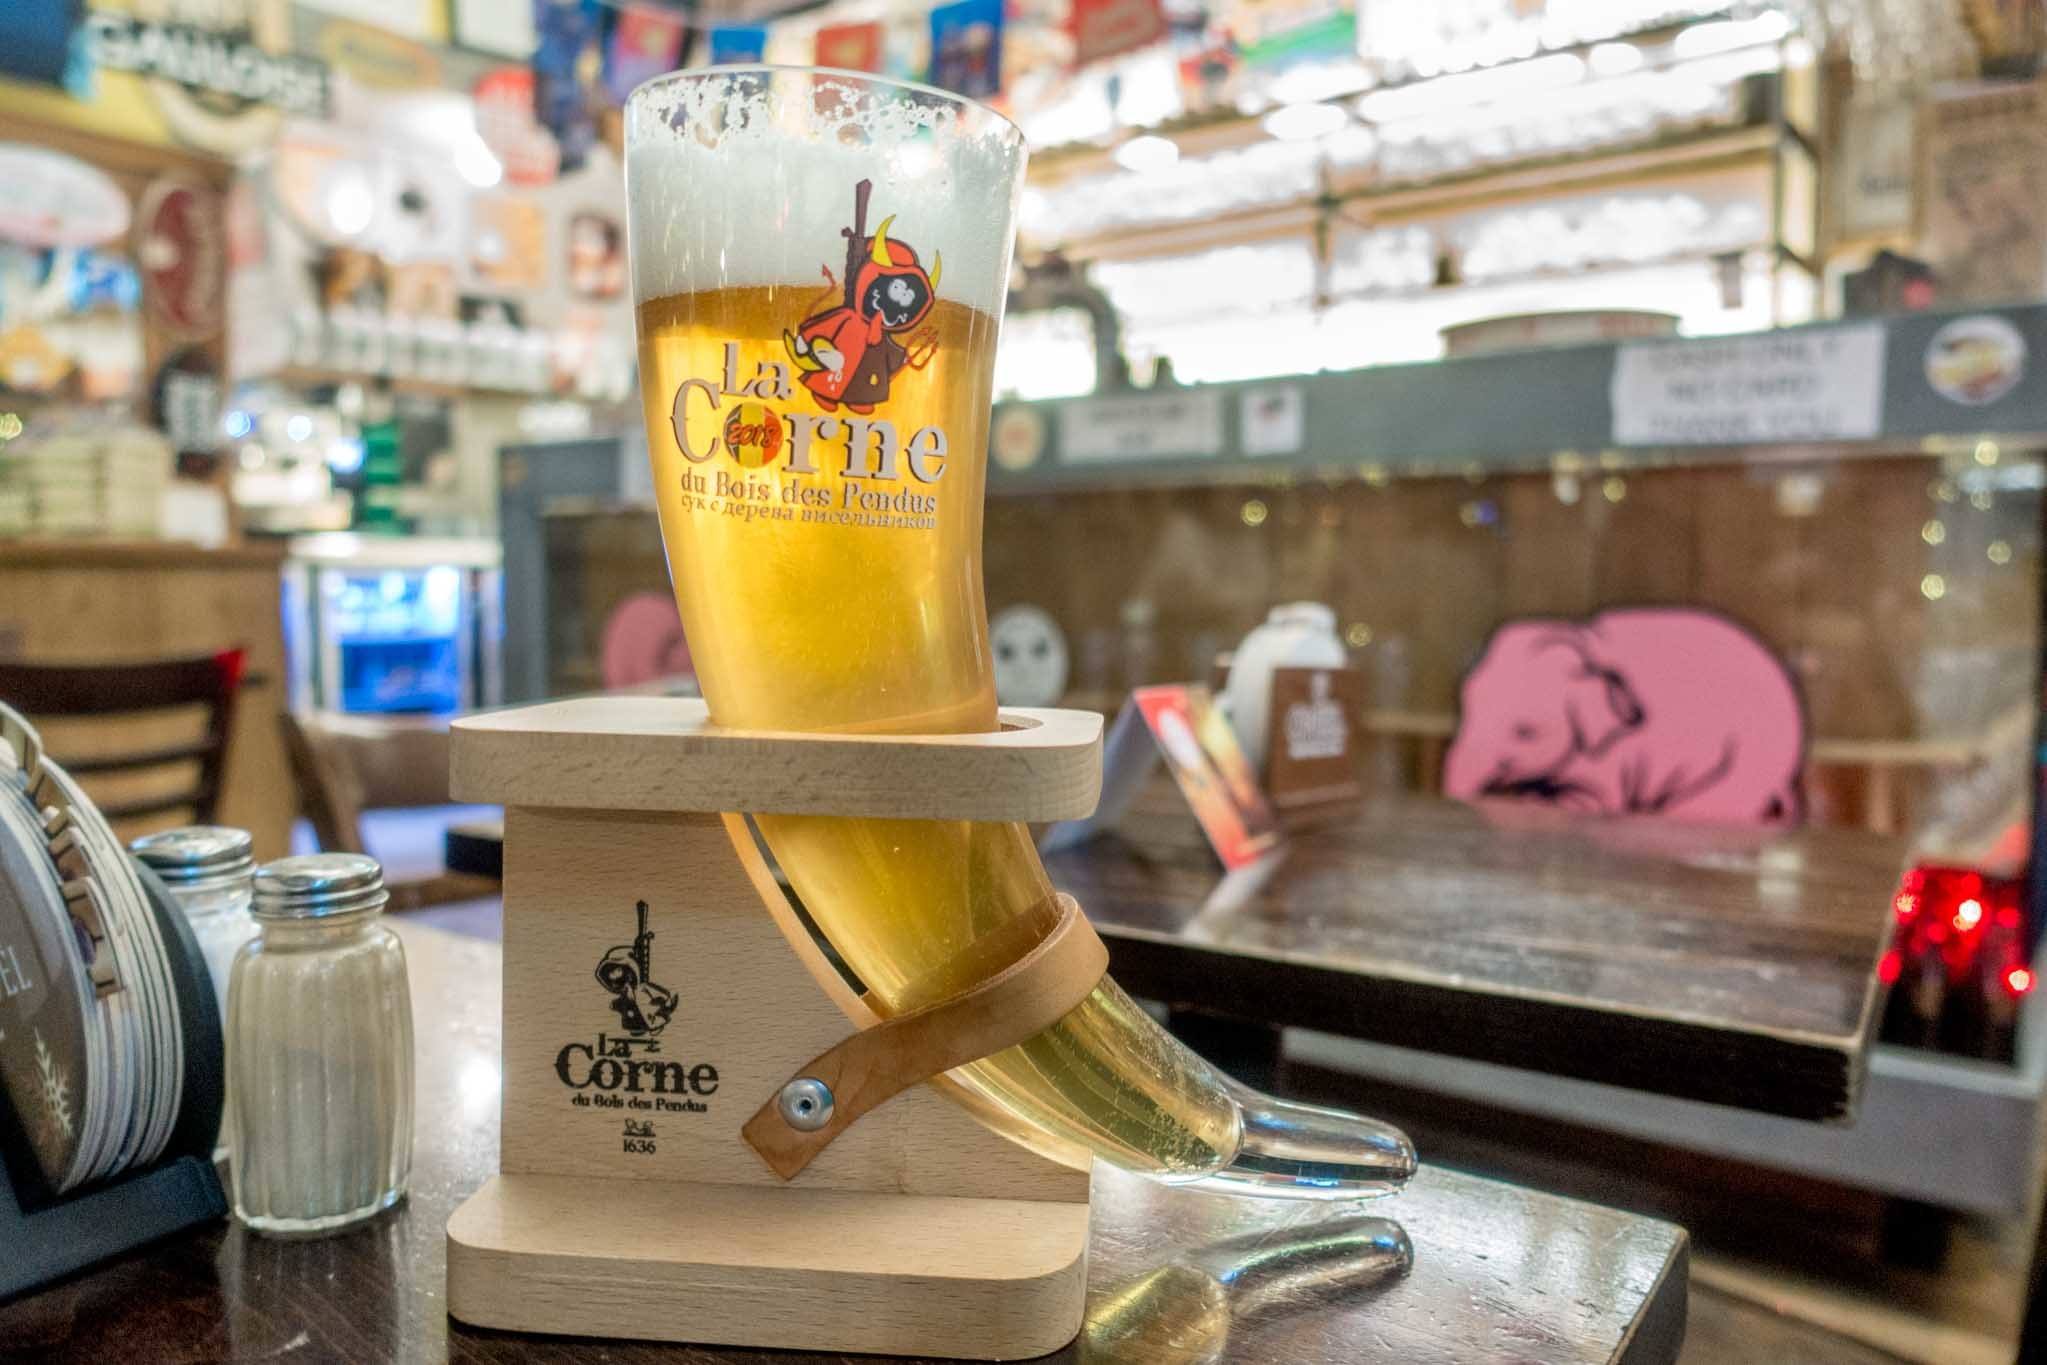 Horn-shaped glass full of beer.